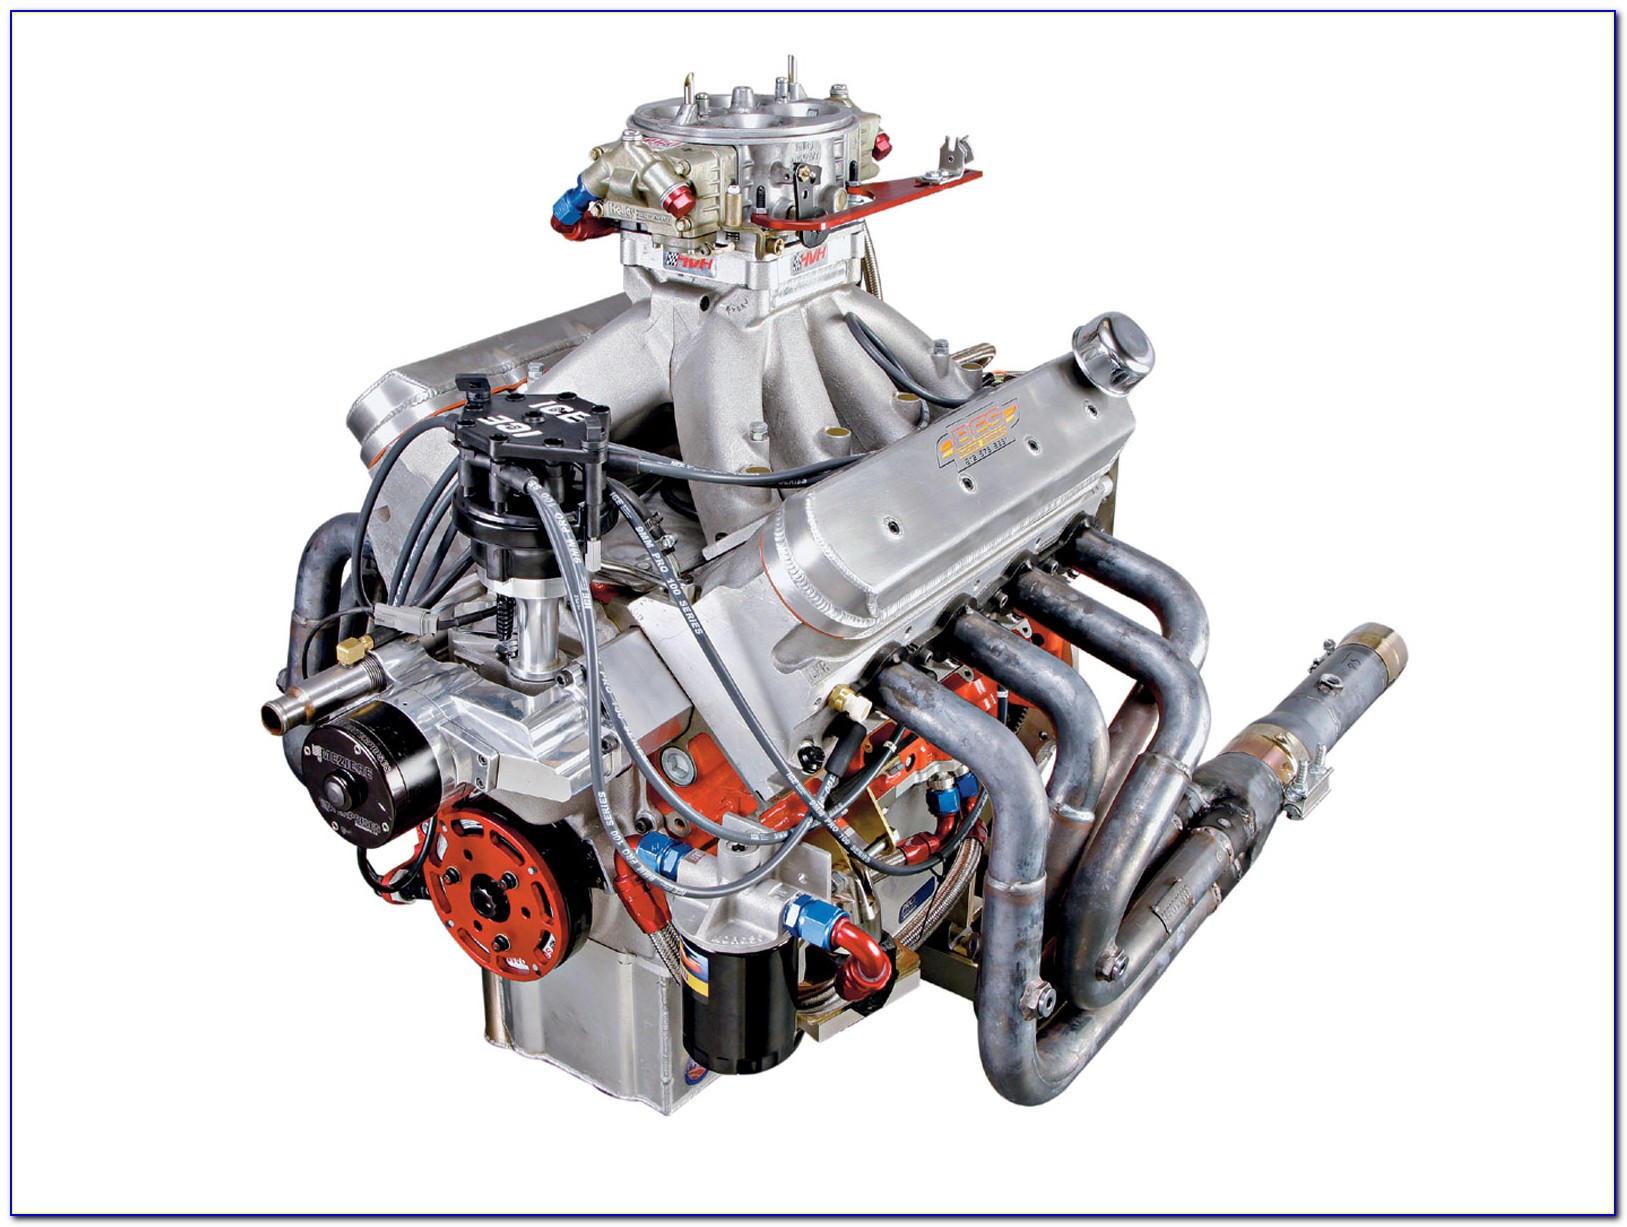 Двигатель на автомобиле является. Двигатели GMC 6-71 6004. Спортивные машины двигатель. Разные двигатели. Различные ДВС.